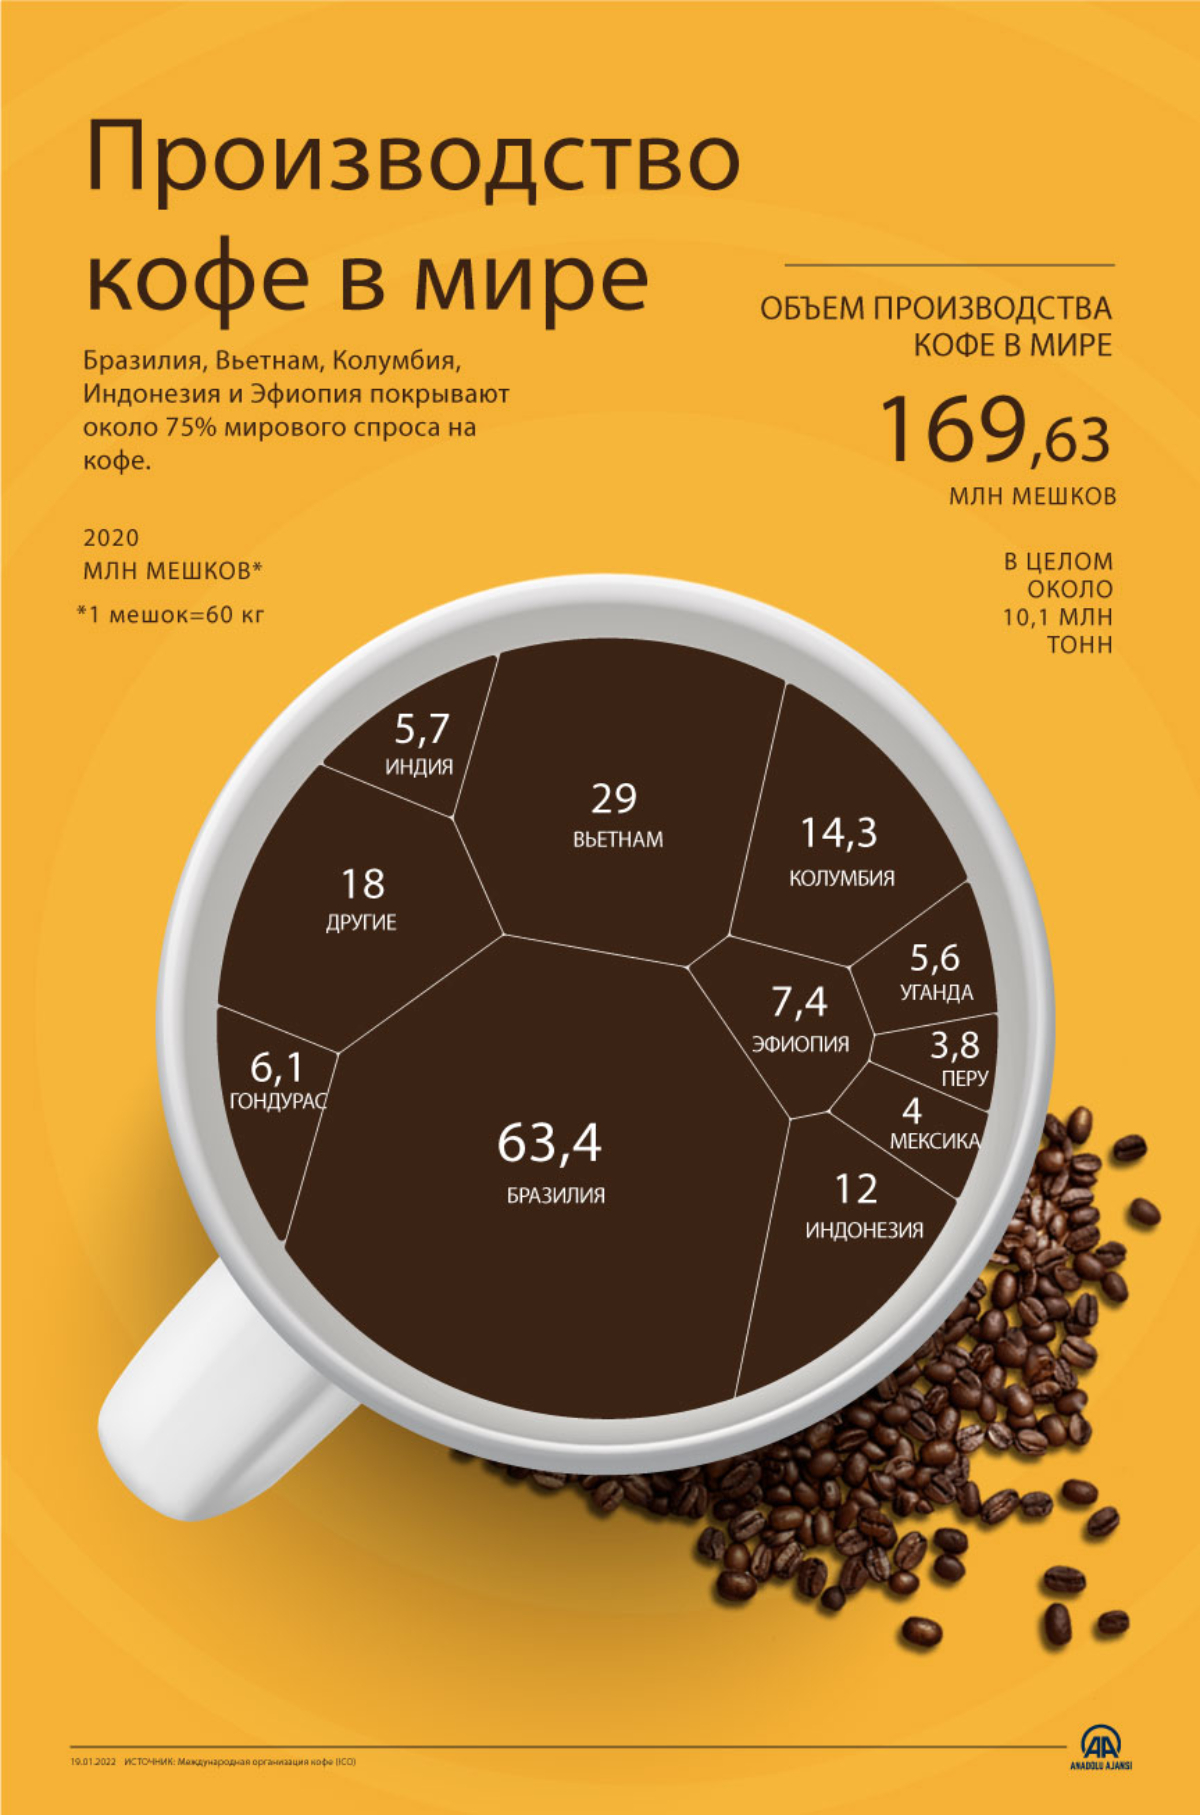 Производство кофе в мире